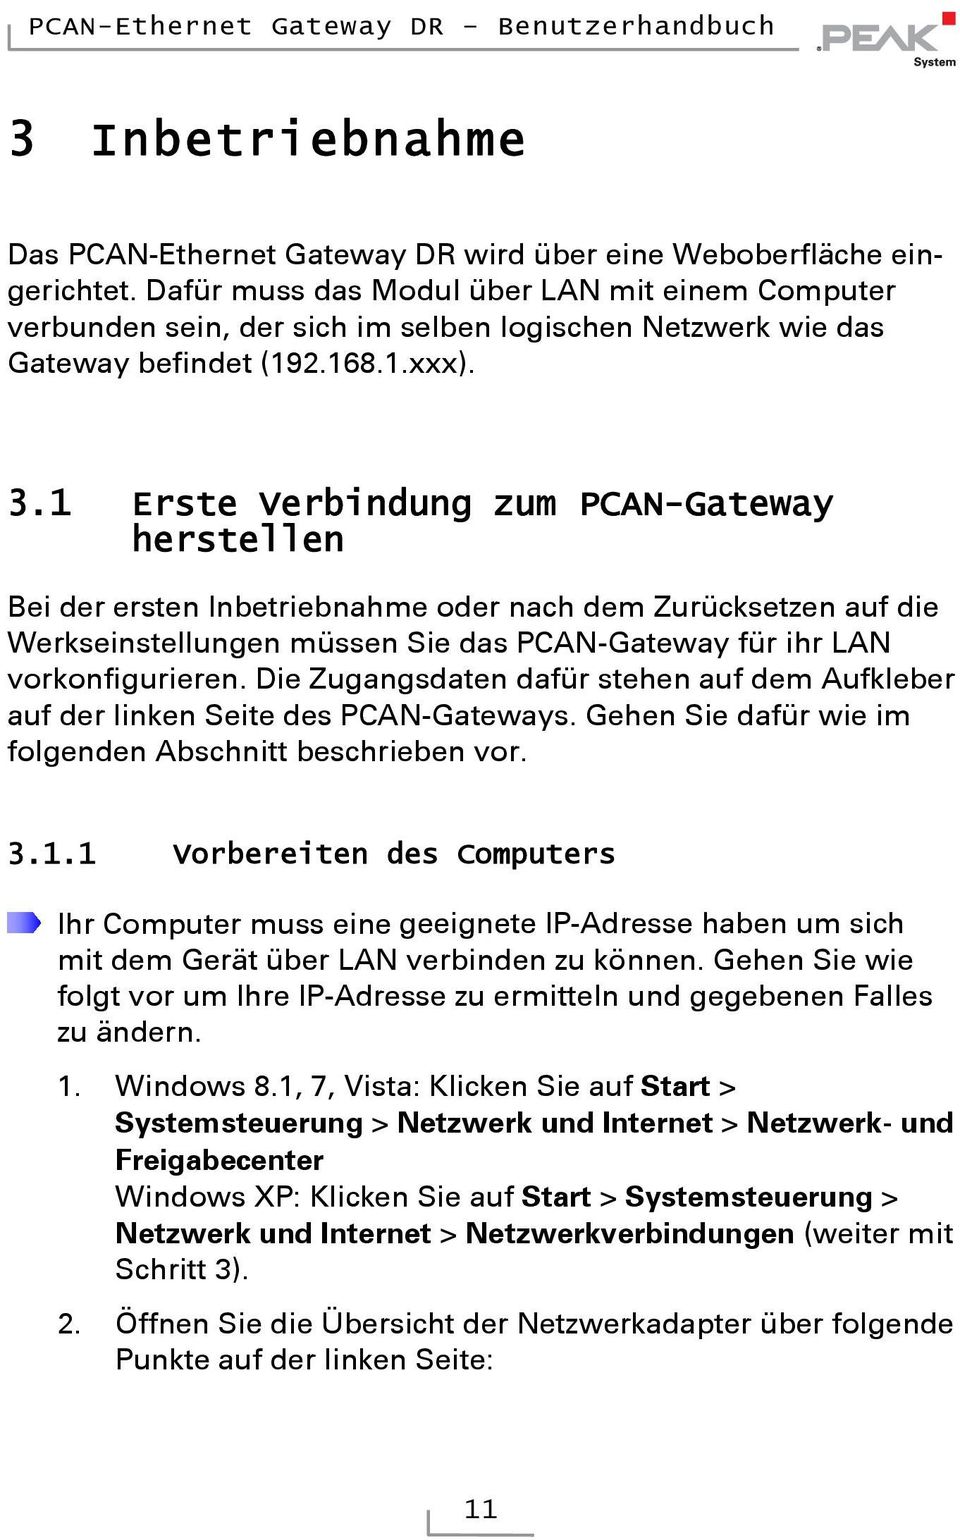 1 Erste Verbindung zum PCAN-Gateway herstellen Bei der ersten Inbetriebnahme oder nach dem Zurücksetzen auf die Werkseinstellungen müssen Sie das PCAN-Gateway für ihr LAN vorkonfigurieren.